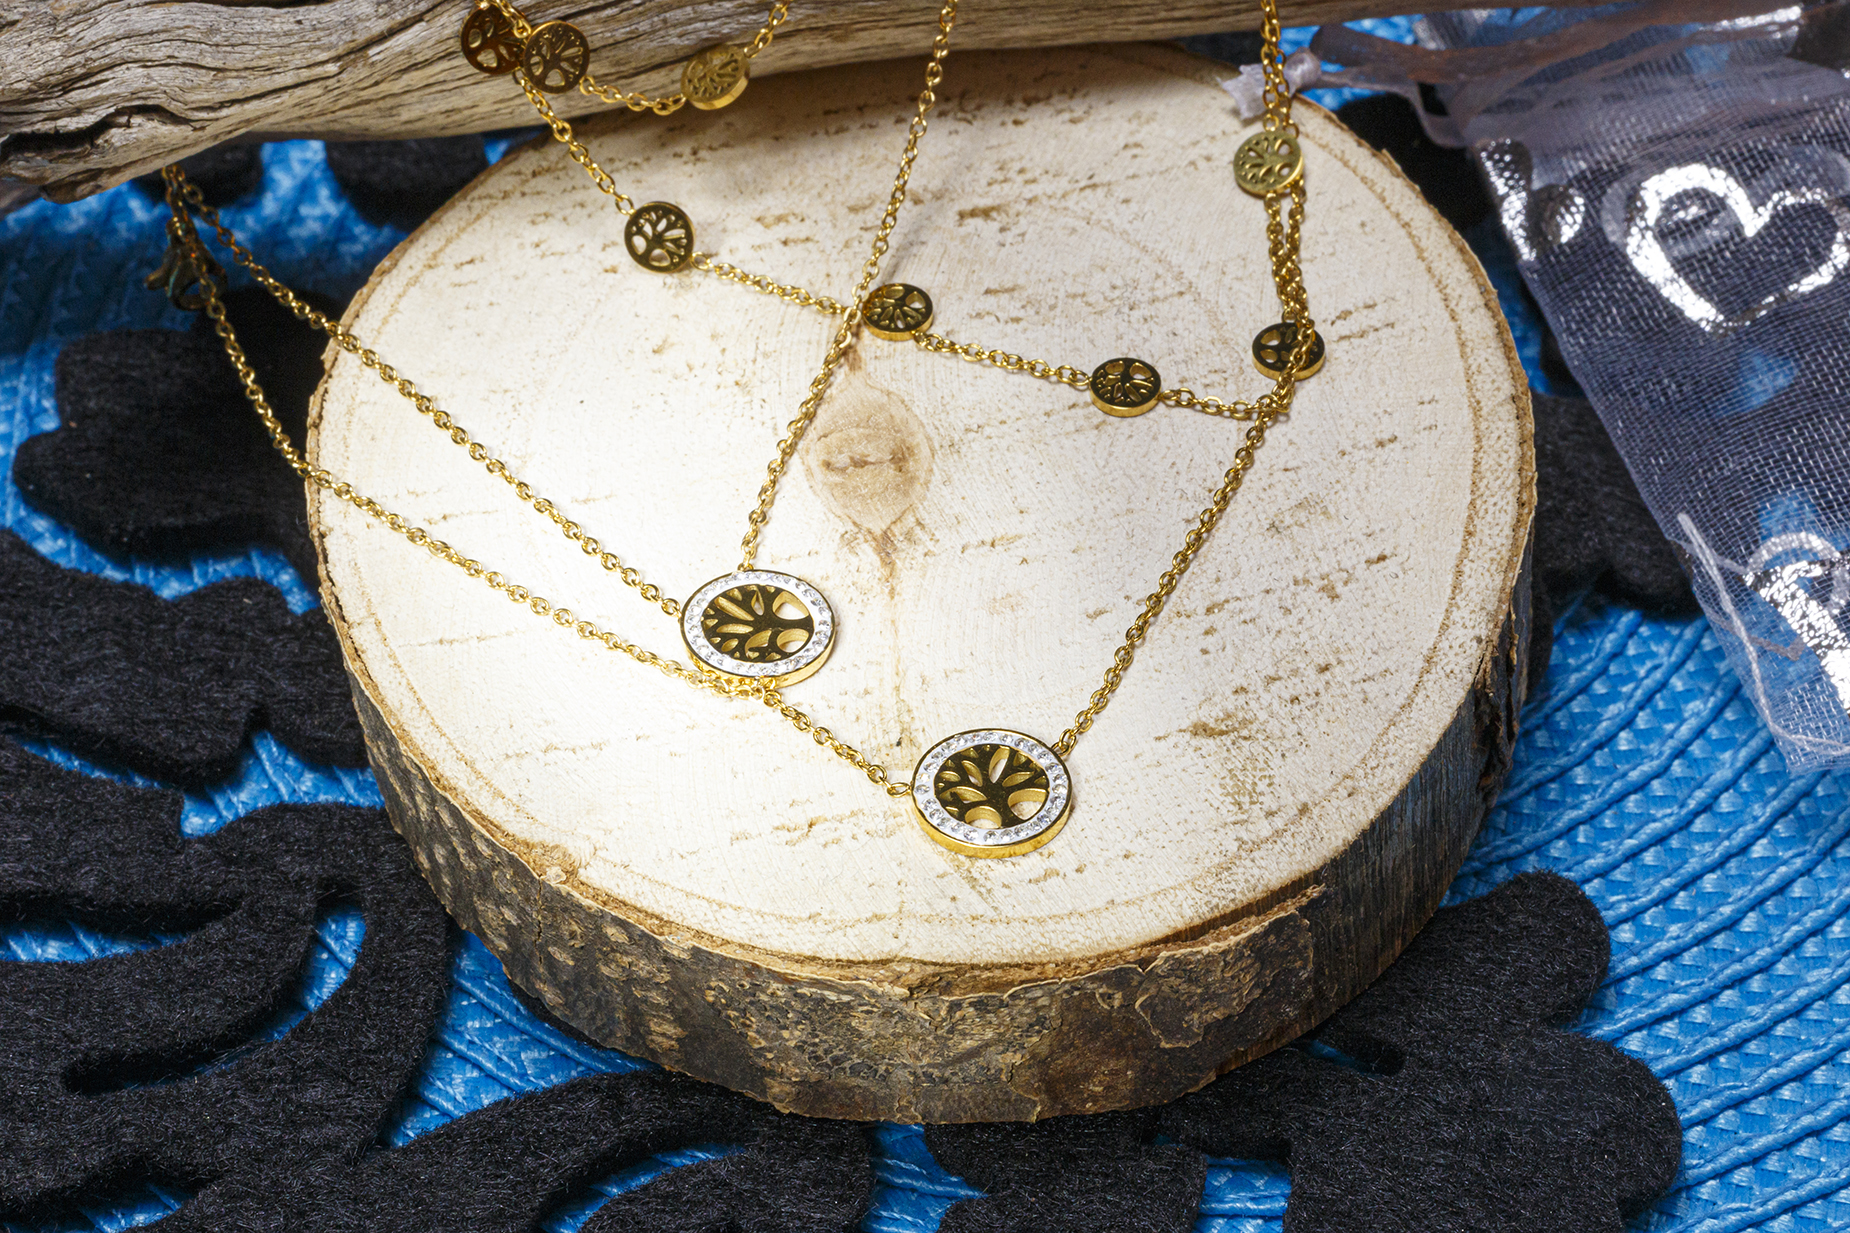 Bijoux, pendentif et bracelet par société AKATAIYO - mise en scène, décoration pour bijoux féminin en or ou argent.